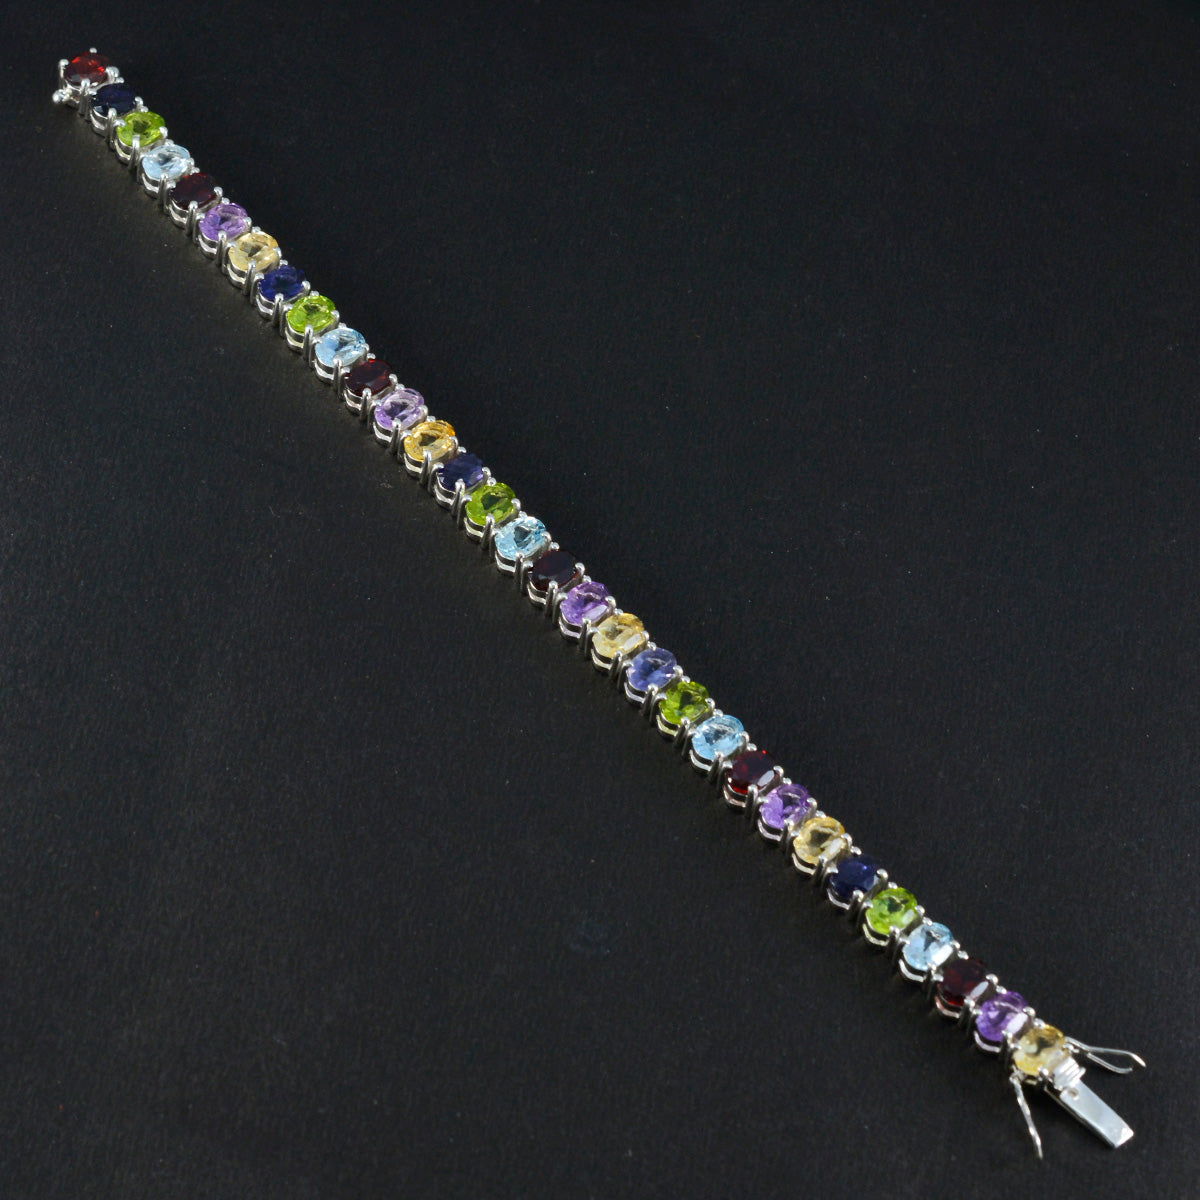 Riyo Bestes 925er-Sterlingsilber-Armband für Damen, Multi-Armband, Krappenfassung, Armband mit Box, mit Zungen-Tennis-Armband, L, Größe 15,2–21,6 cm.